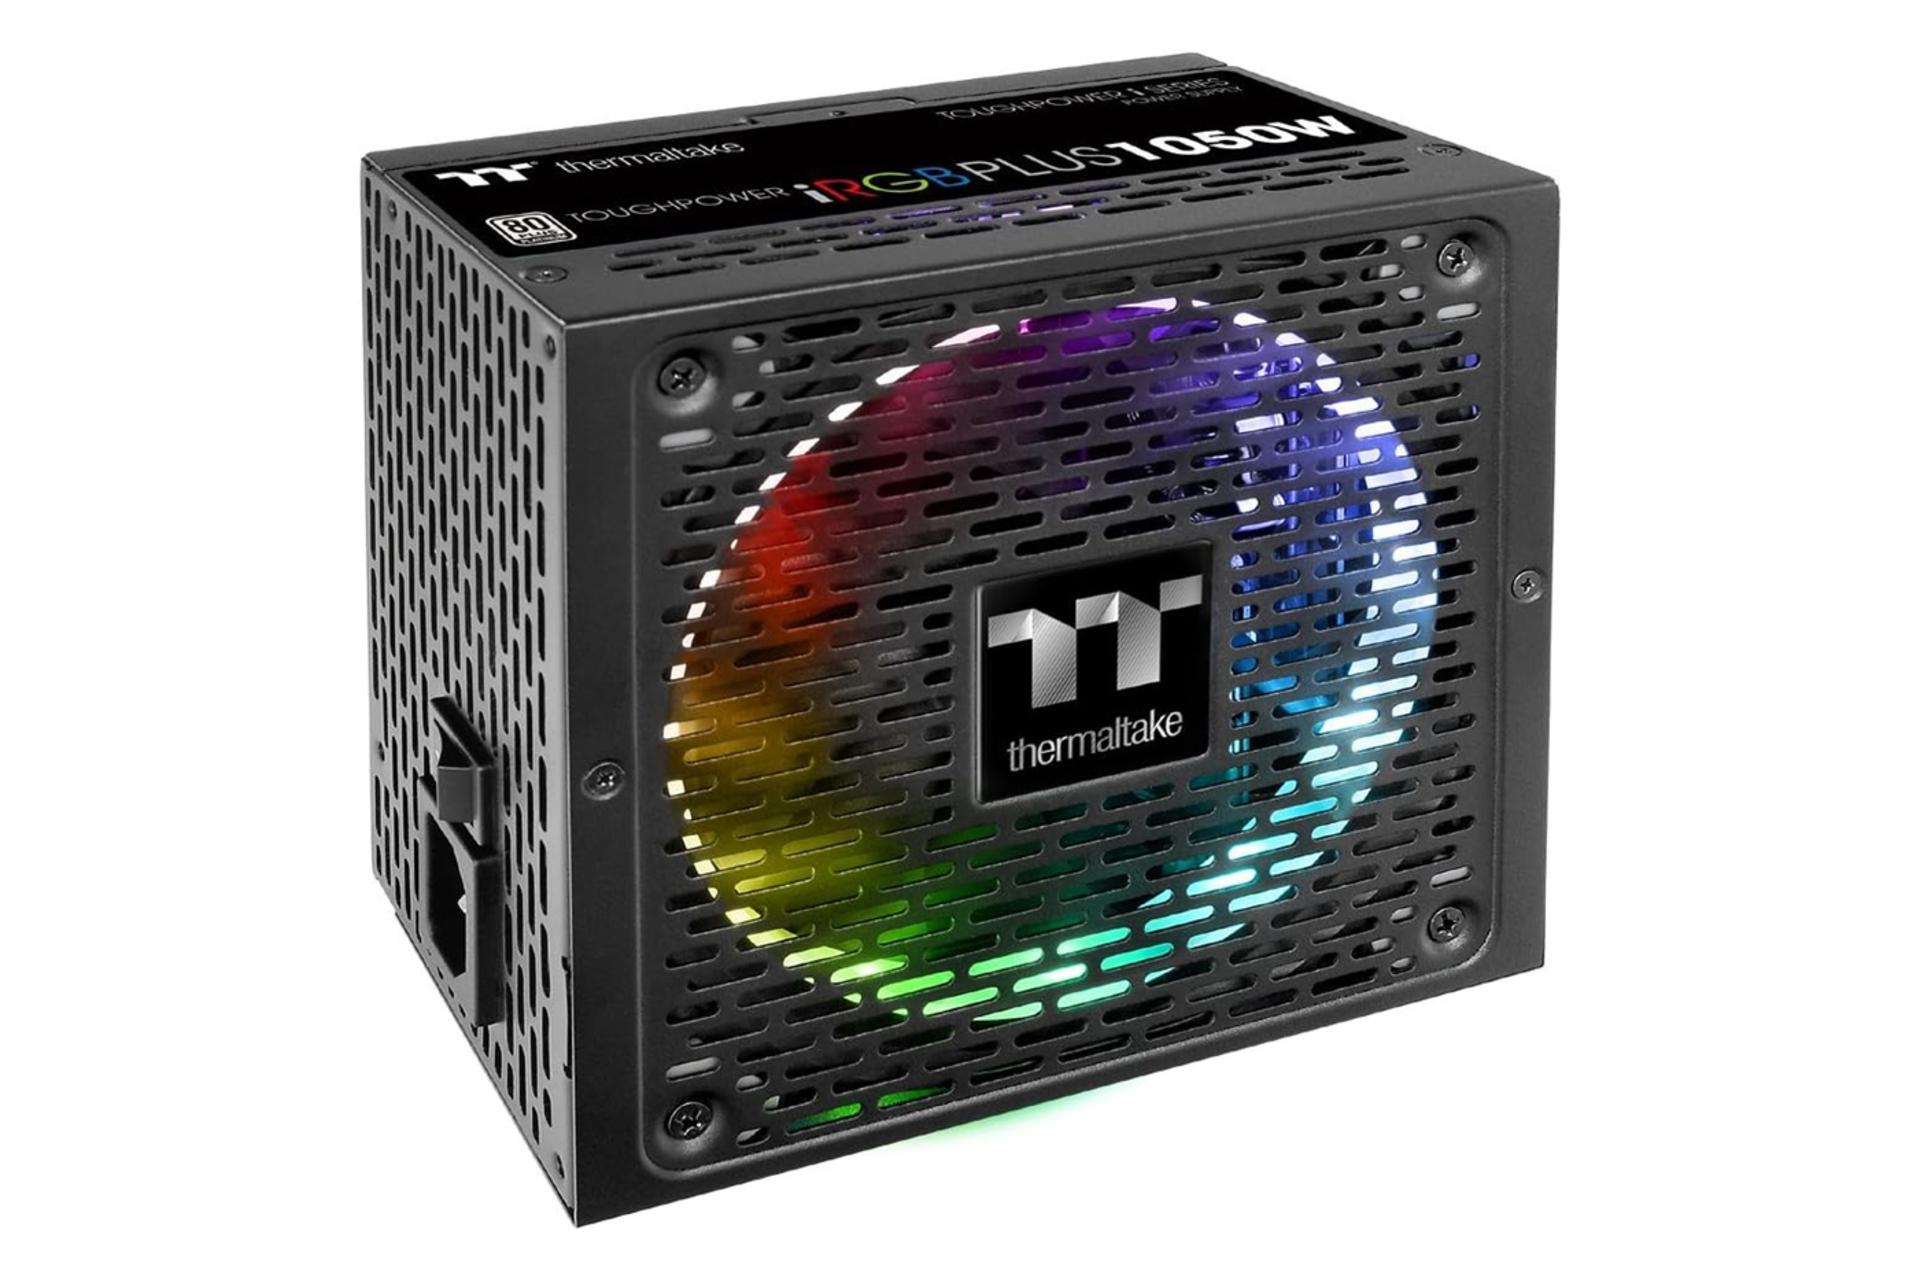 نورپردازی پاور کامپیوتر ترمالتیک Toughpower iRGB PLUS 1050W Platinum - TT Premium Edition با توان 1050 وات